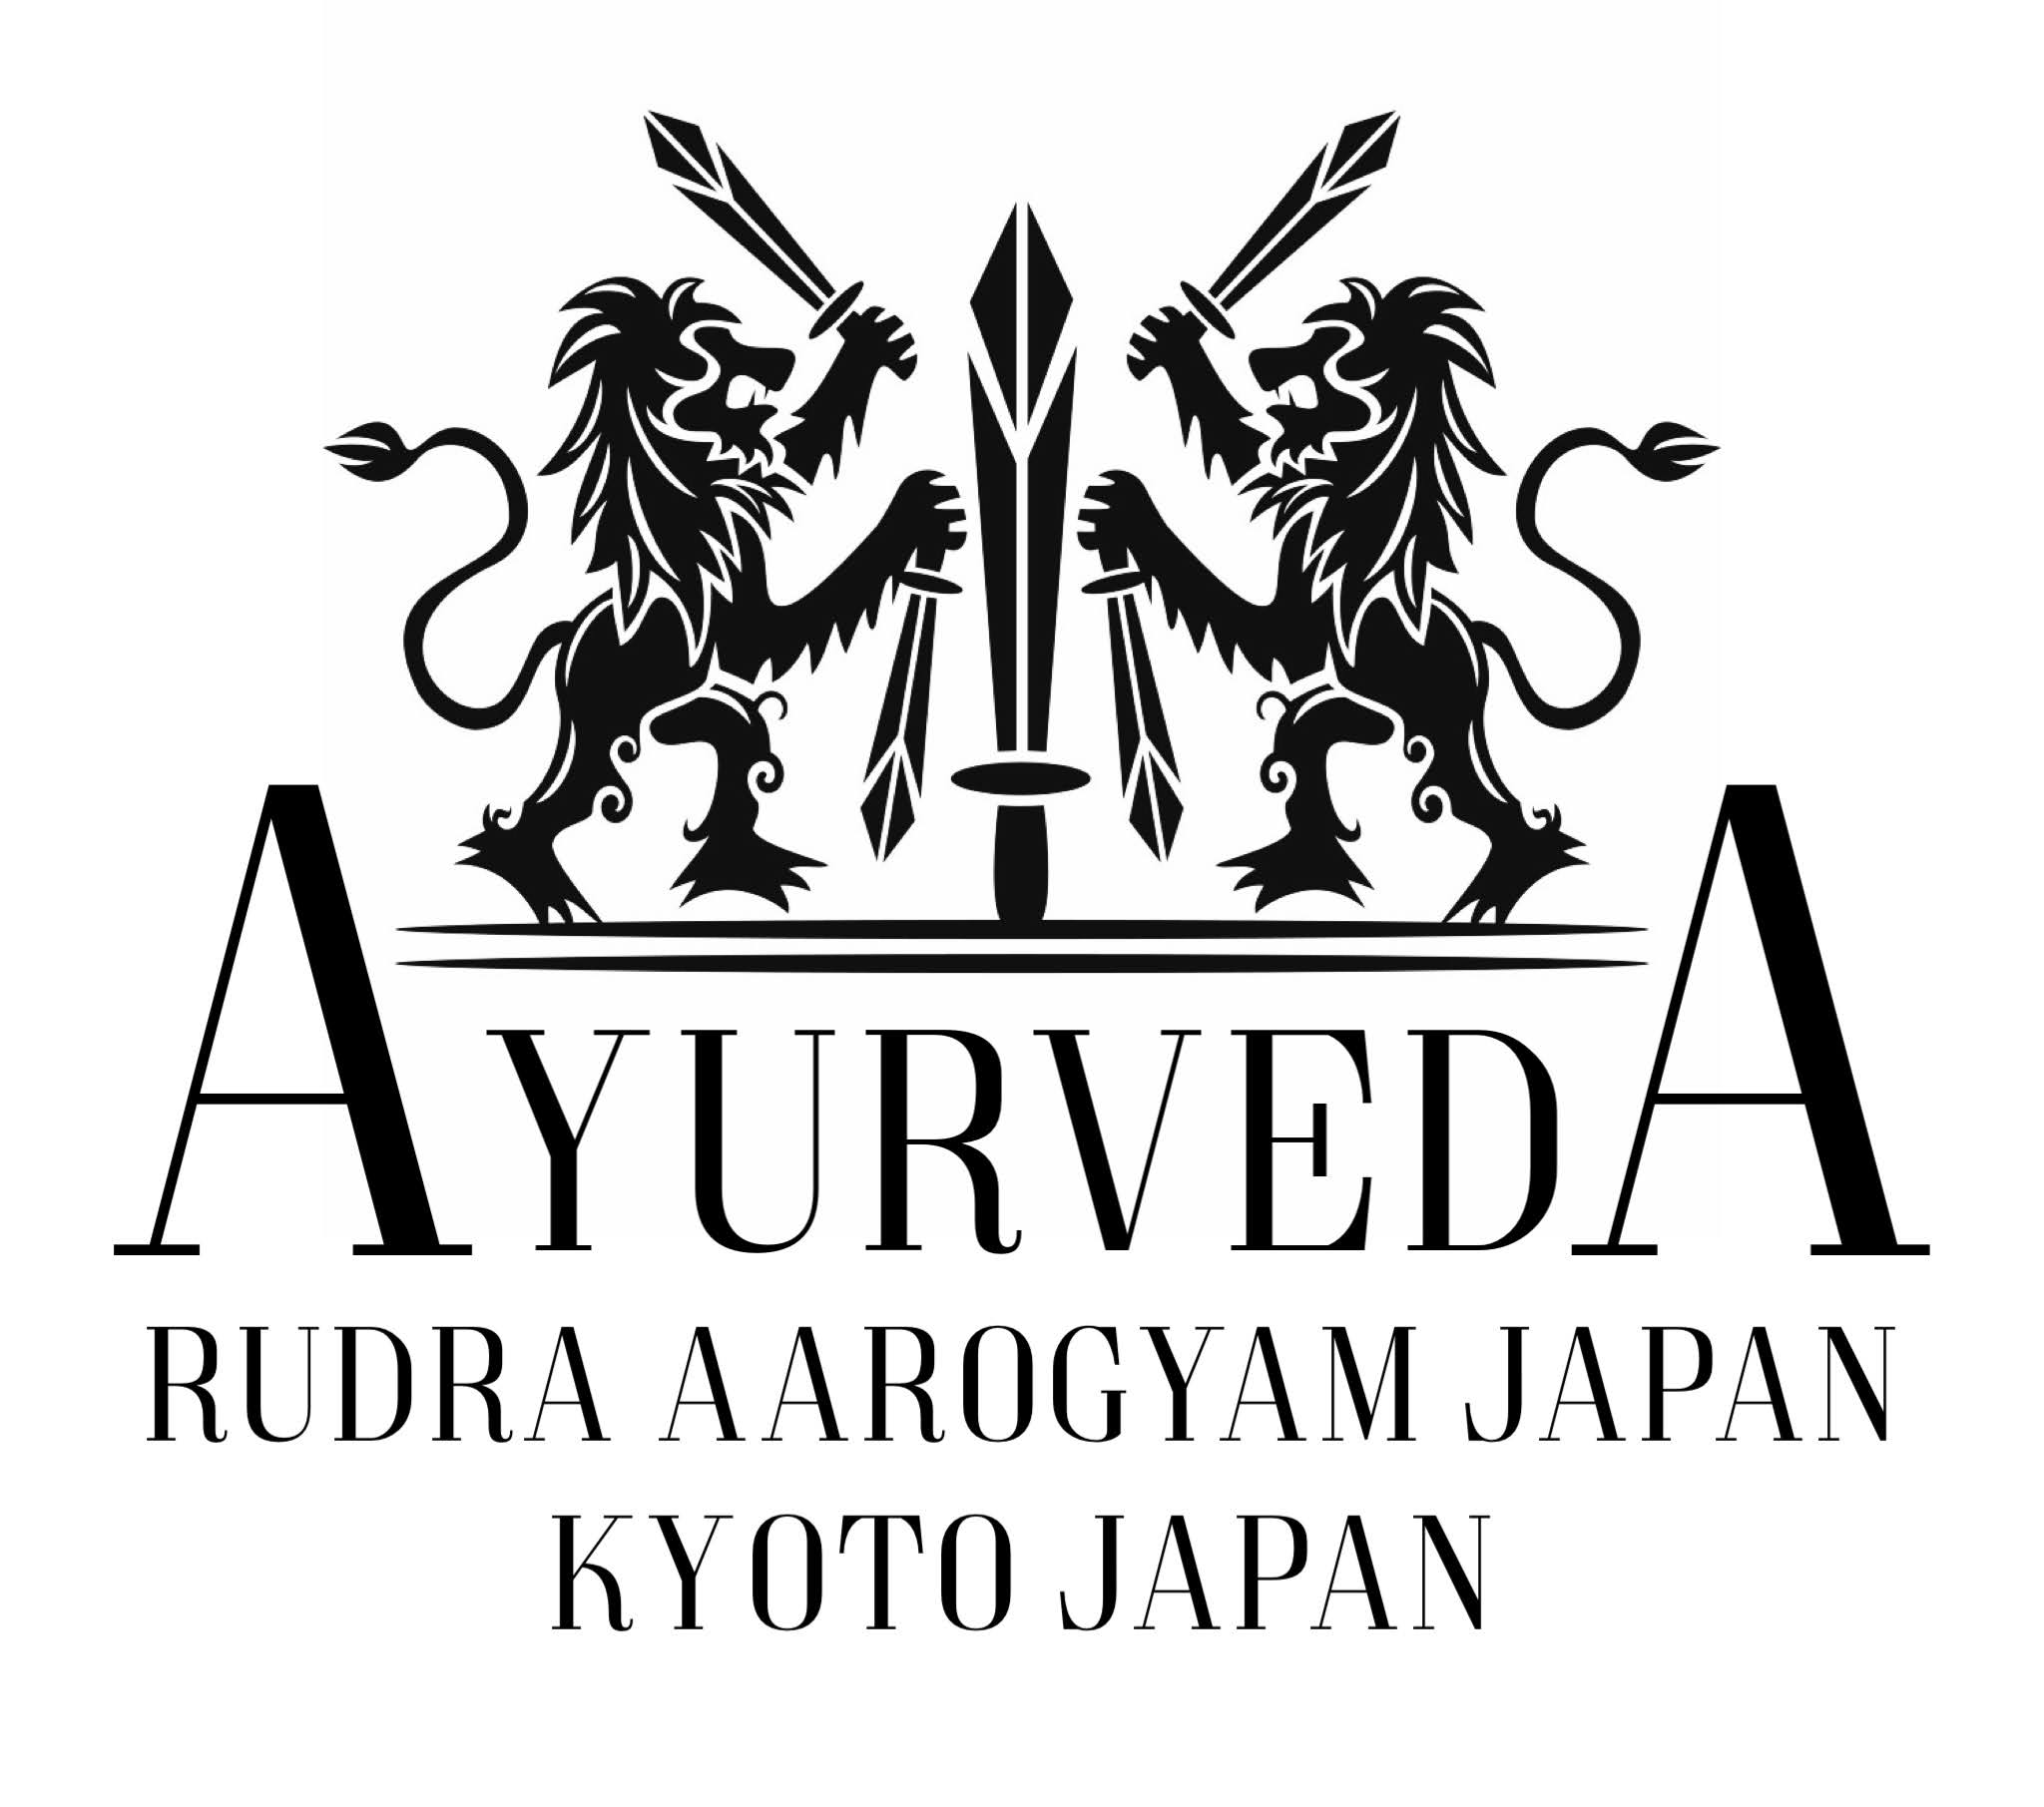 RUDRA AAROGYAM JAPAN KYOTO